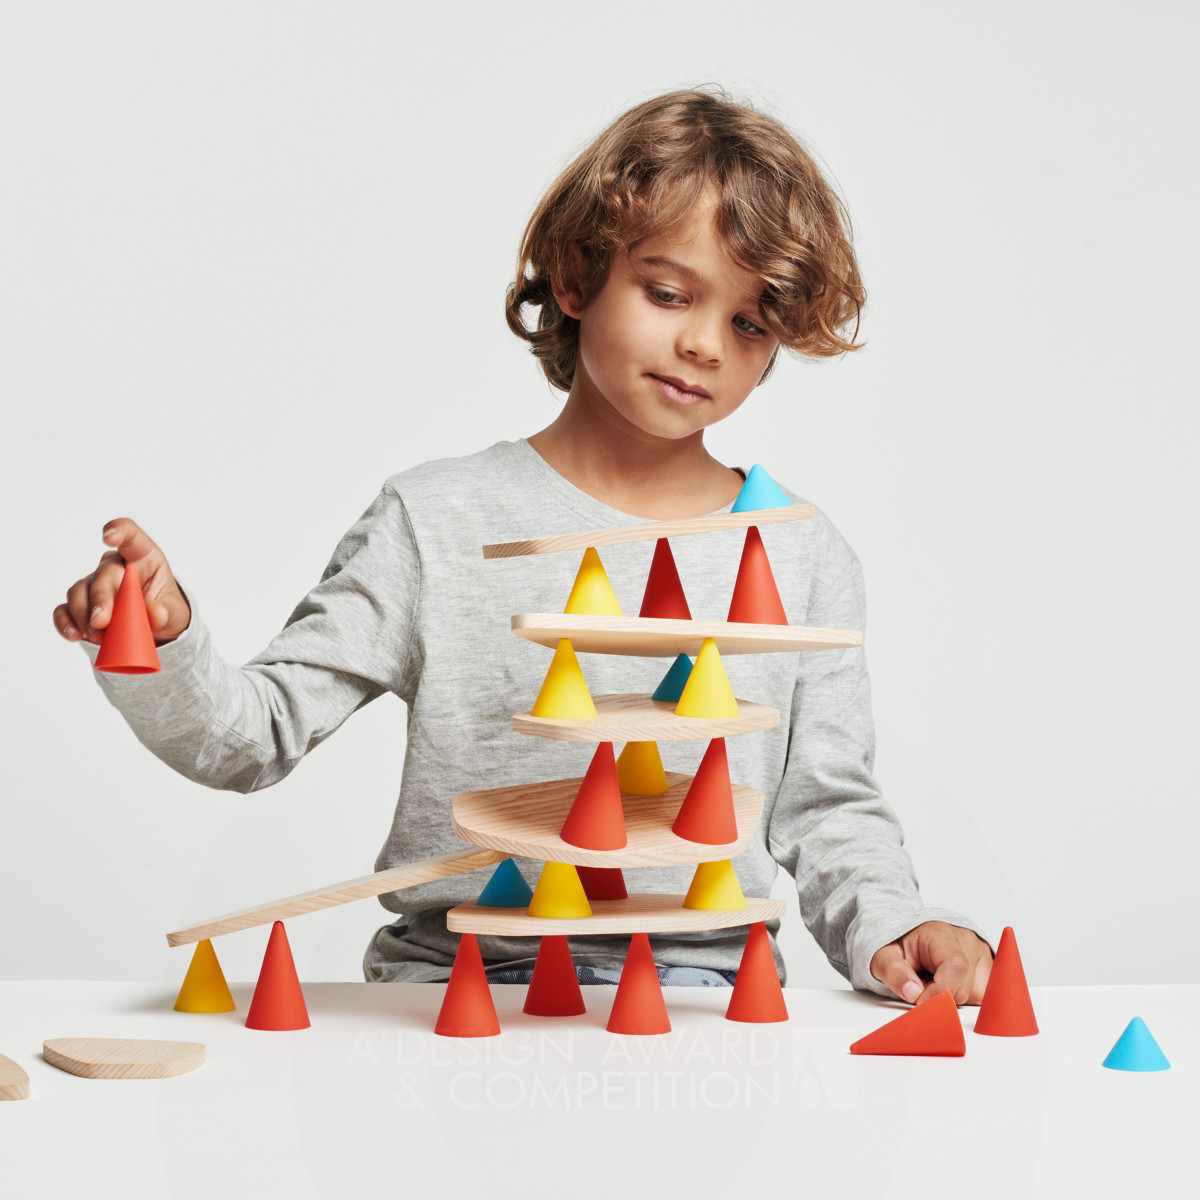 Piks: Ein innovatives Spielzeug, das die Konzentration von Kindern fördert